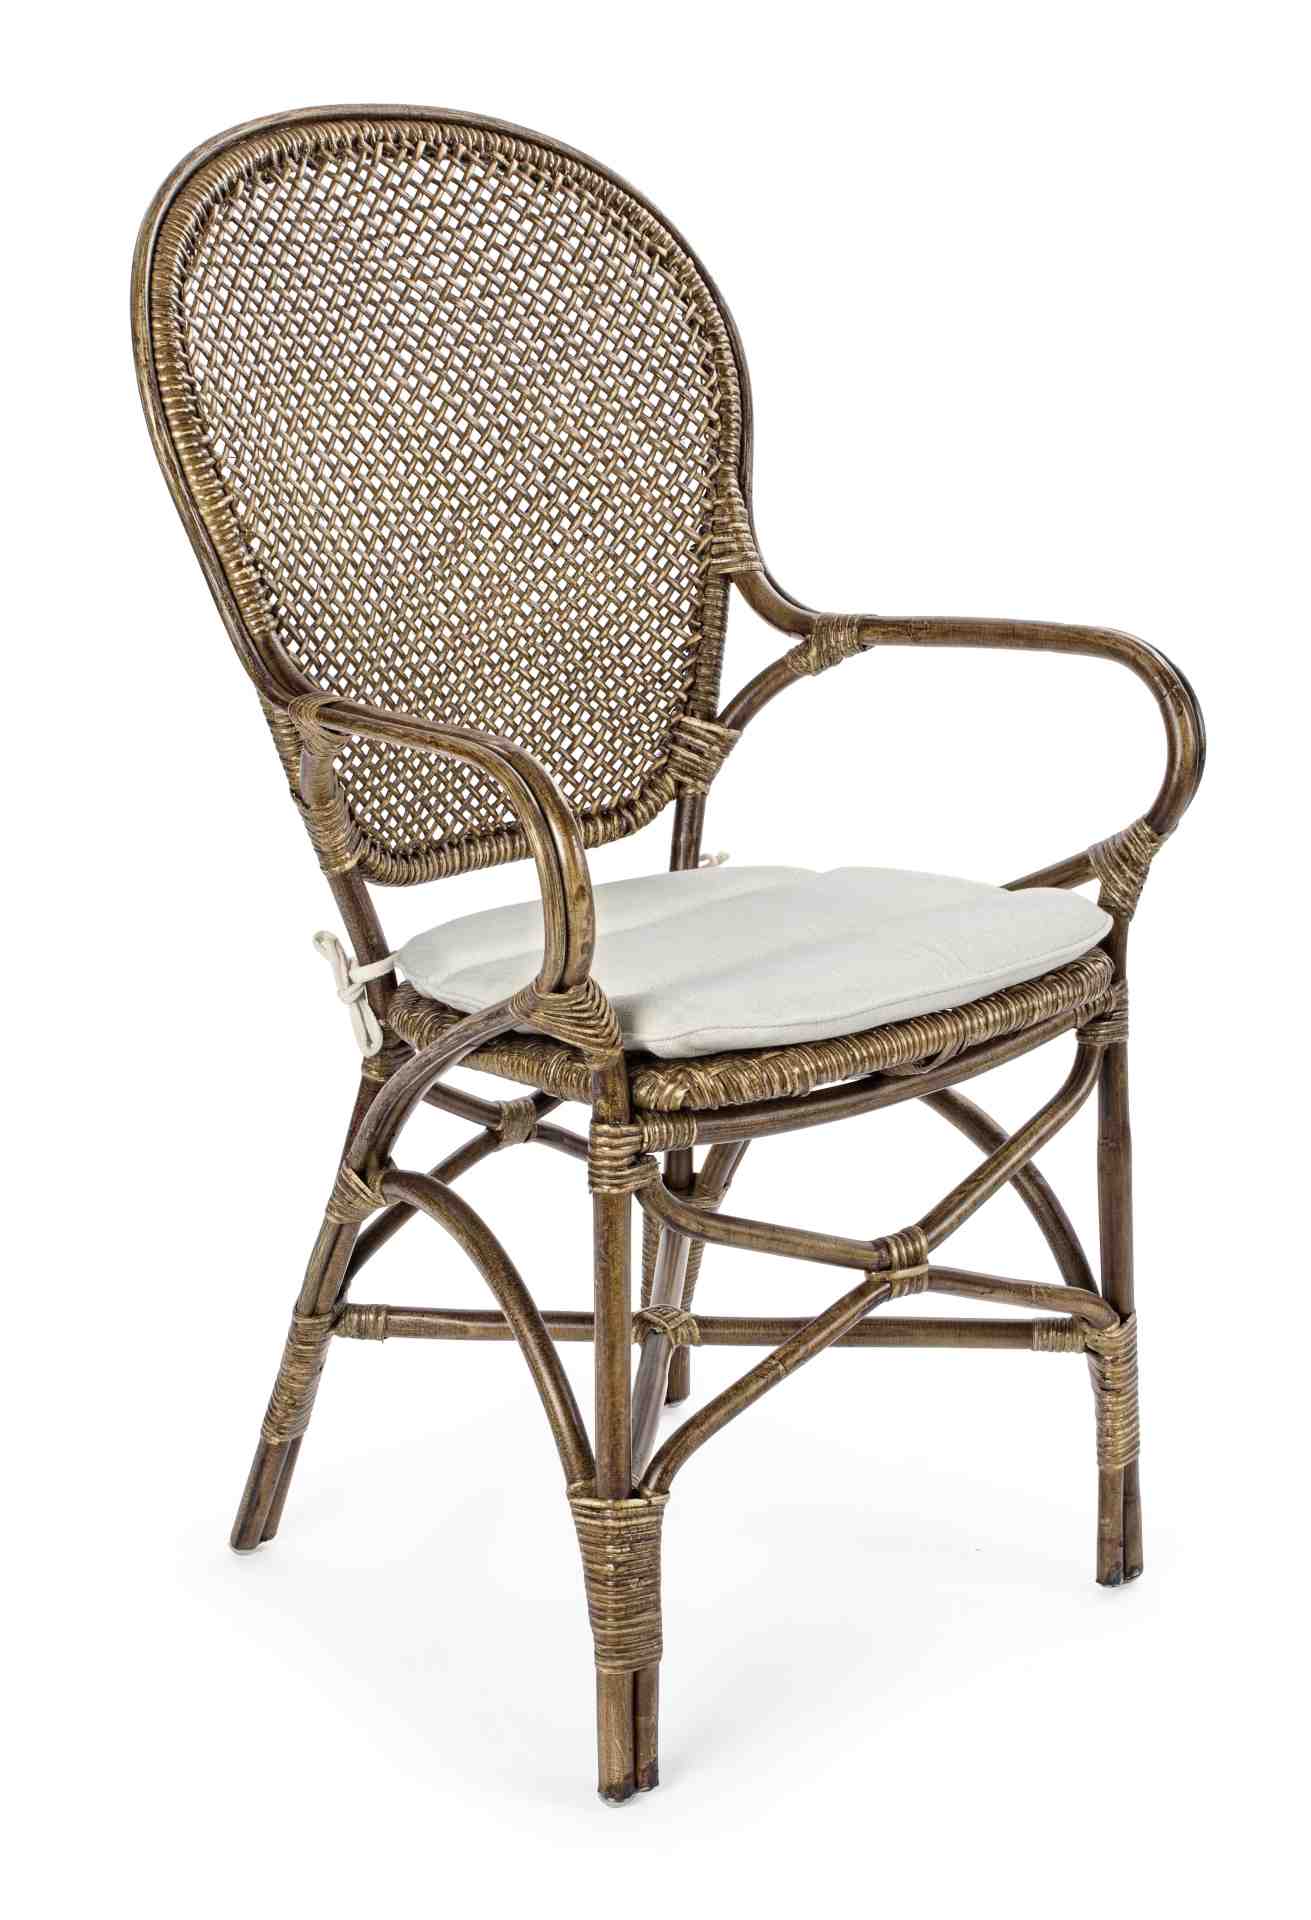 Der Stuhl Edelina überzeugt mit seinem klassischem Design. Gefertigt wurde der Stuhl aus Rattan, welches einen braunen Farbton besitzt. Der Stuhl beinhaltet ein Sitzkissen aus Baumwolle. Die Sitzhöhe beträgt 47 cm.